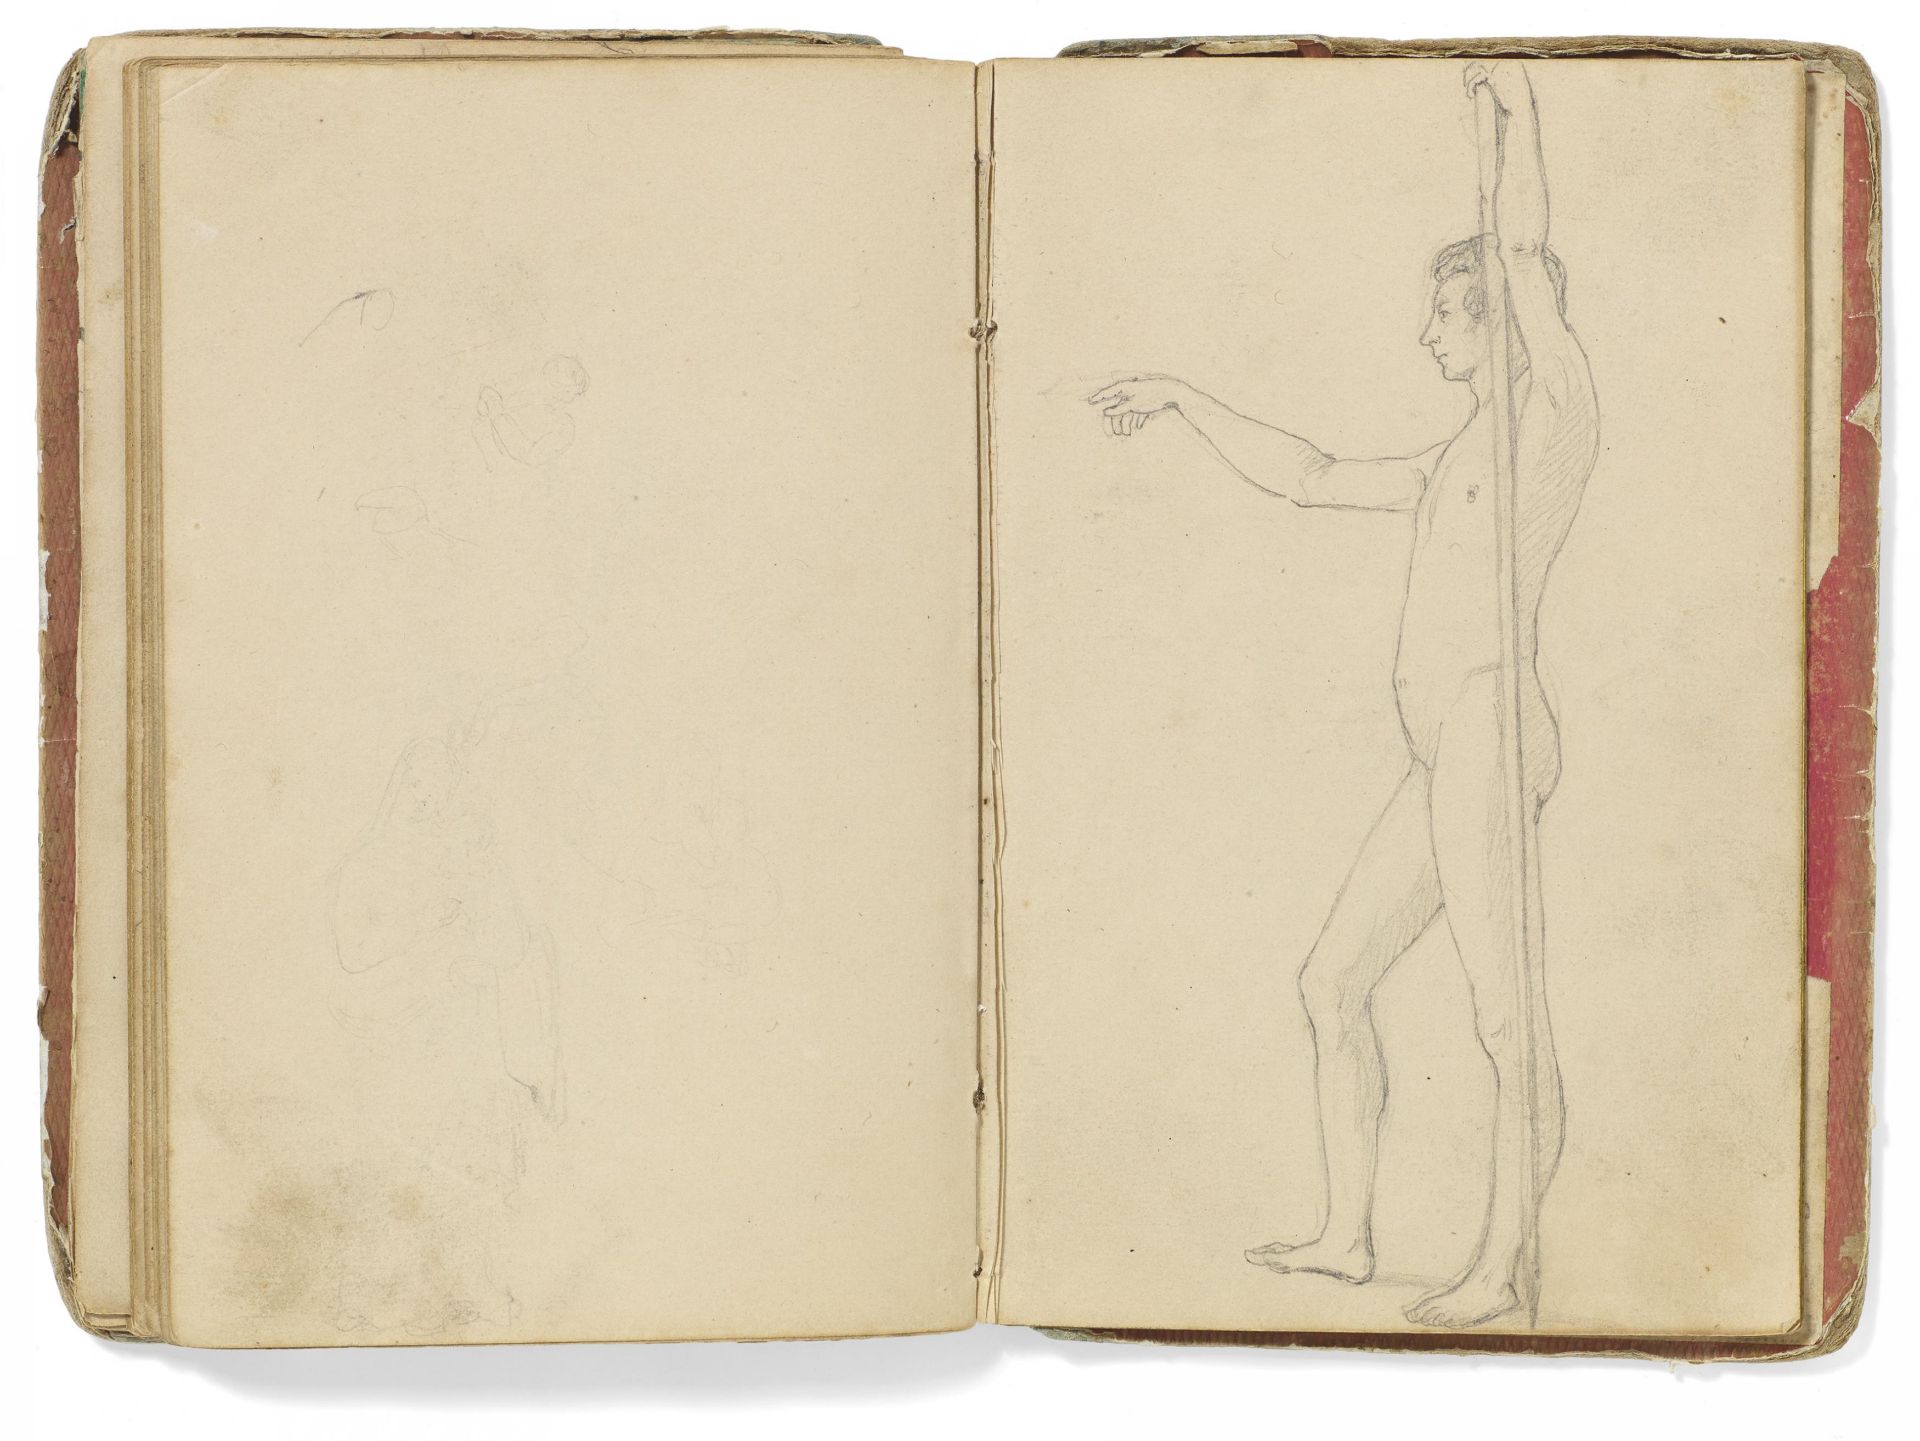 Kaupert, GustavKassel 1819 - 1897 Skizzenbuch, ca. 40 Seiten. Figuren, Tiere und Skelette. Bleistift - Image 5 of 6